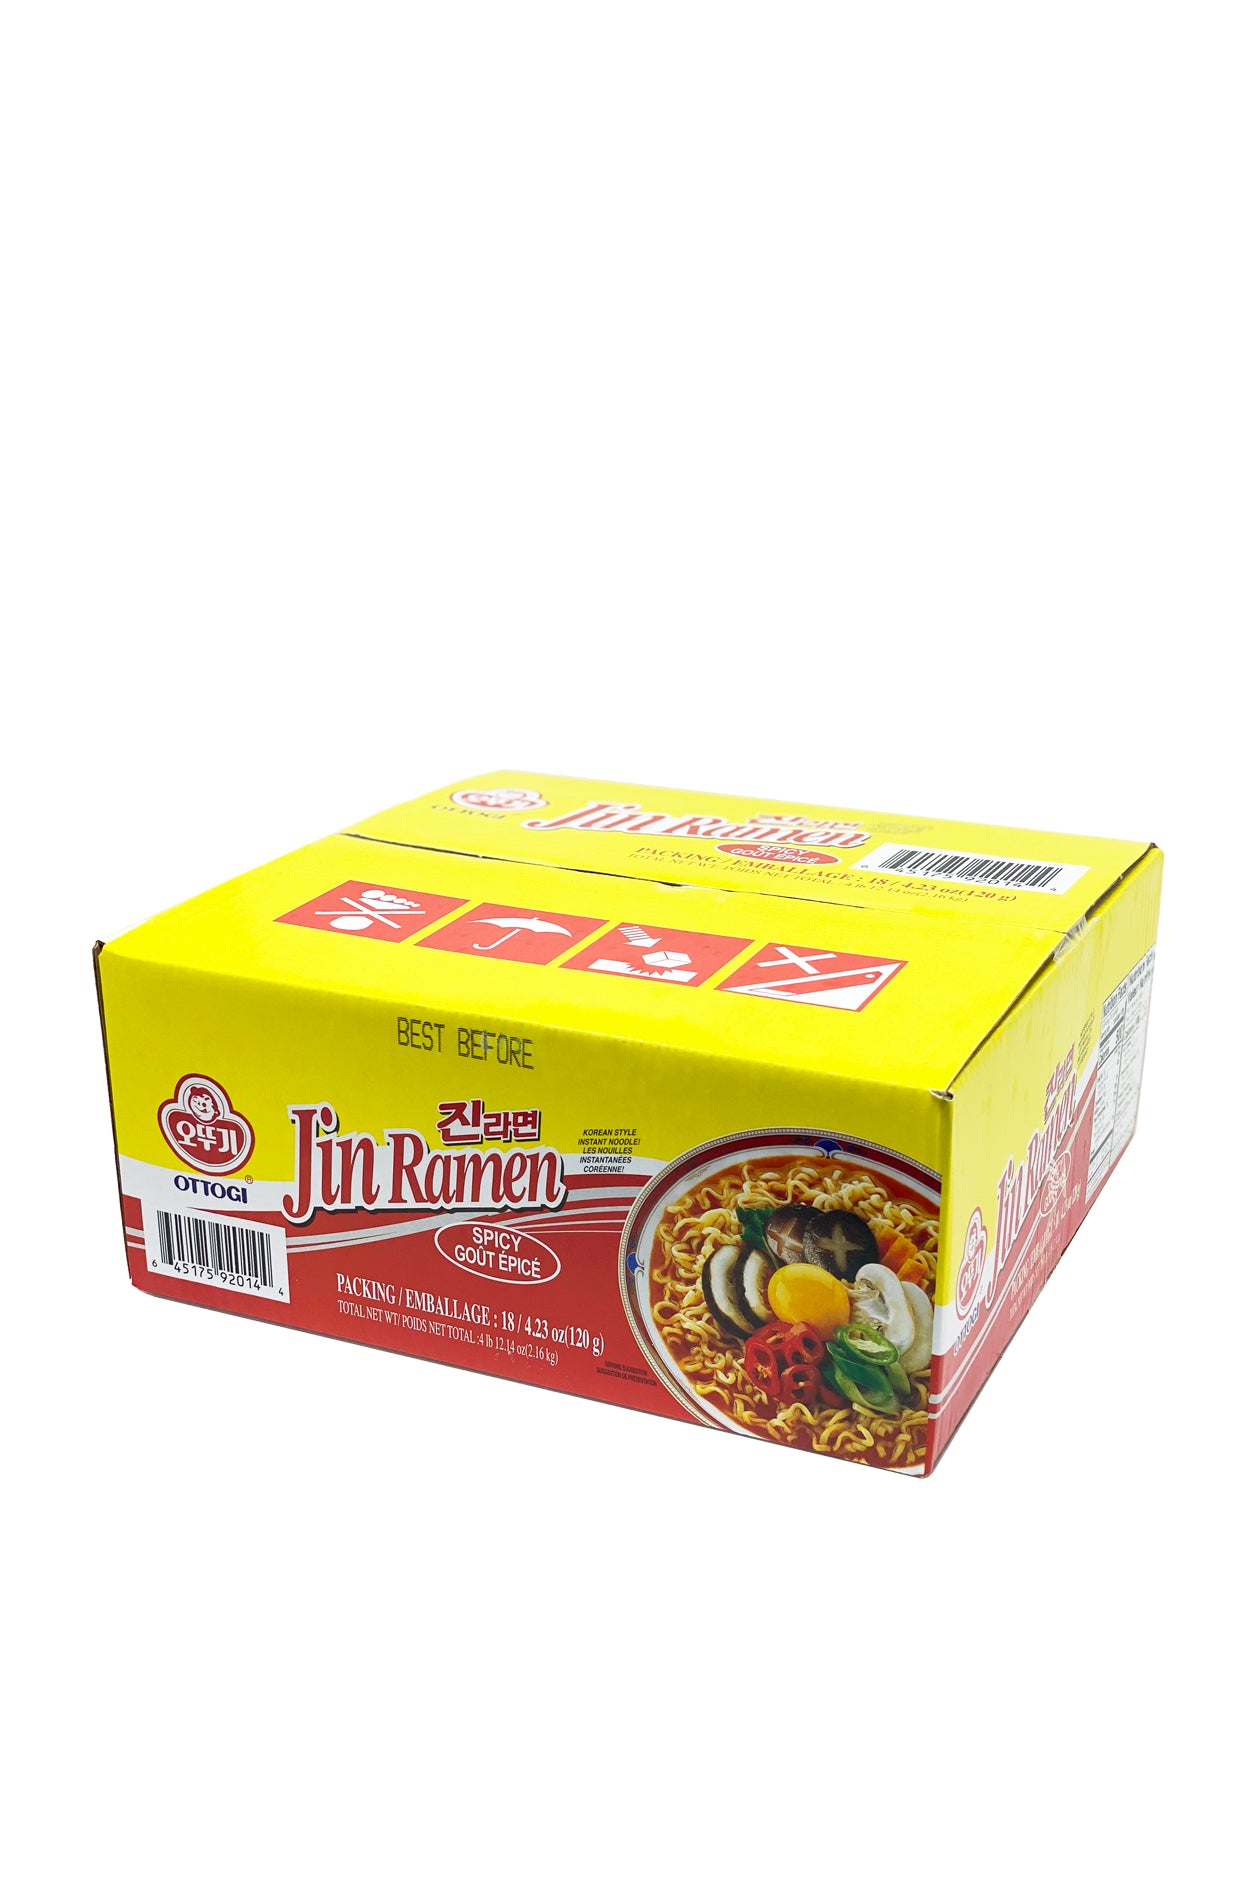 Cup Noodles Jin Ramen épicée -65g - Ottogi